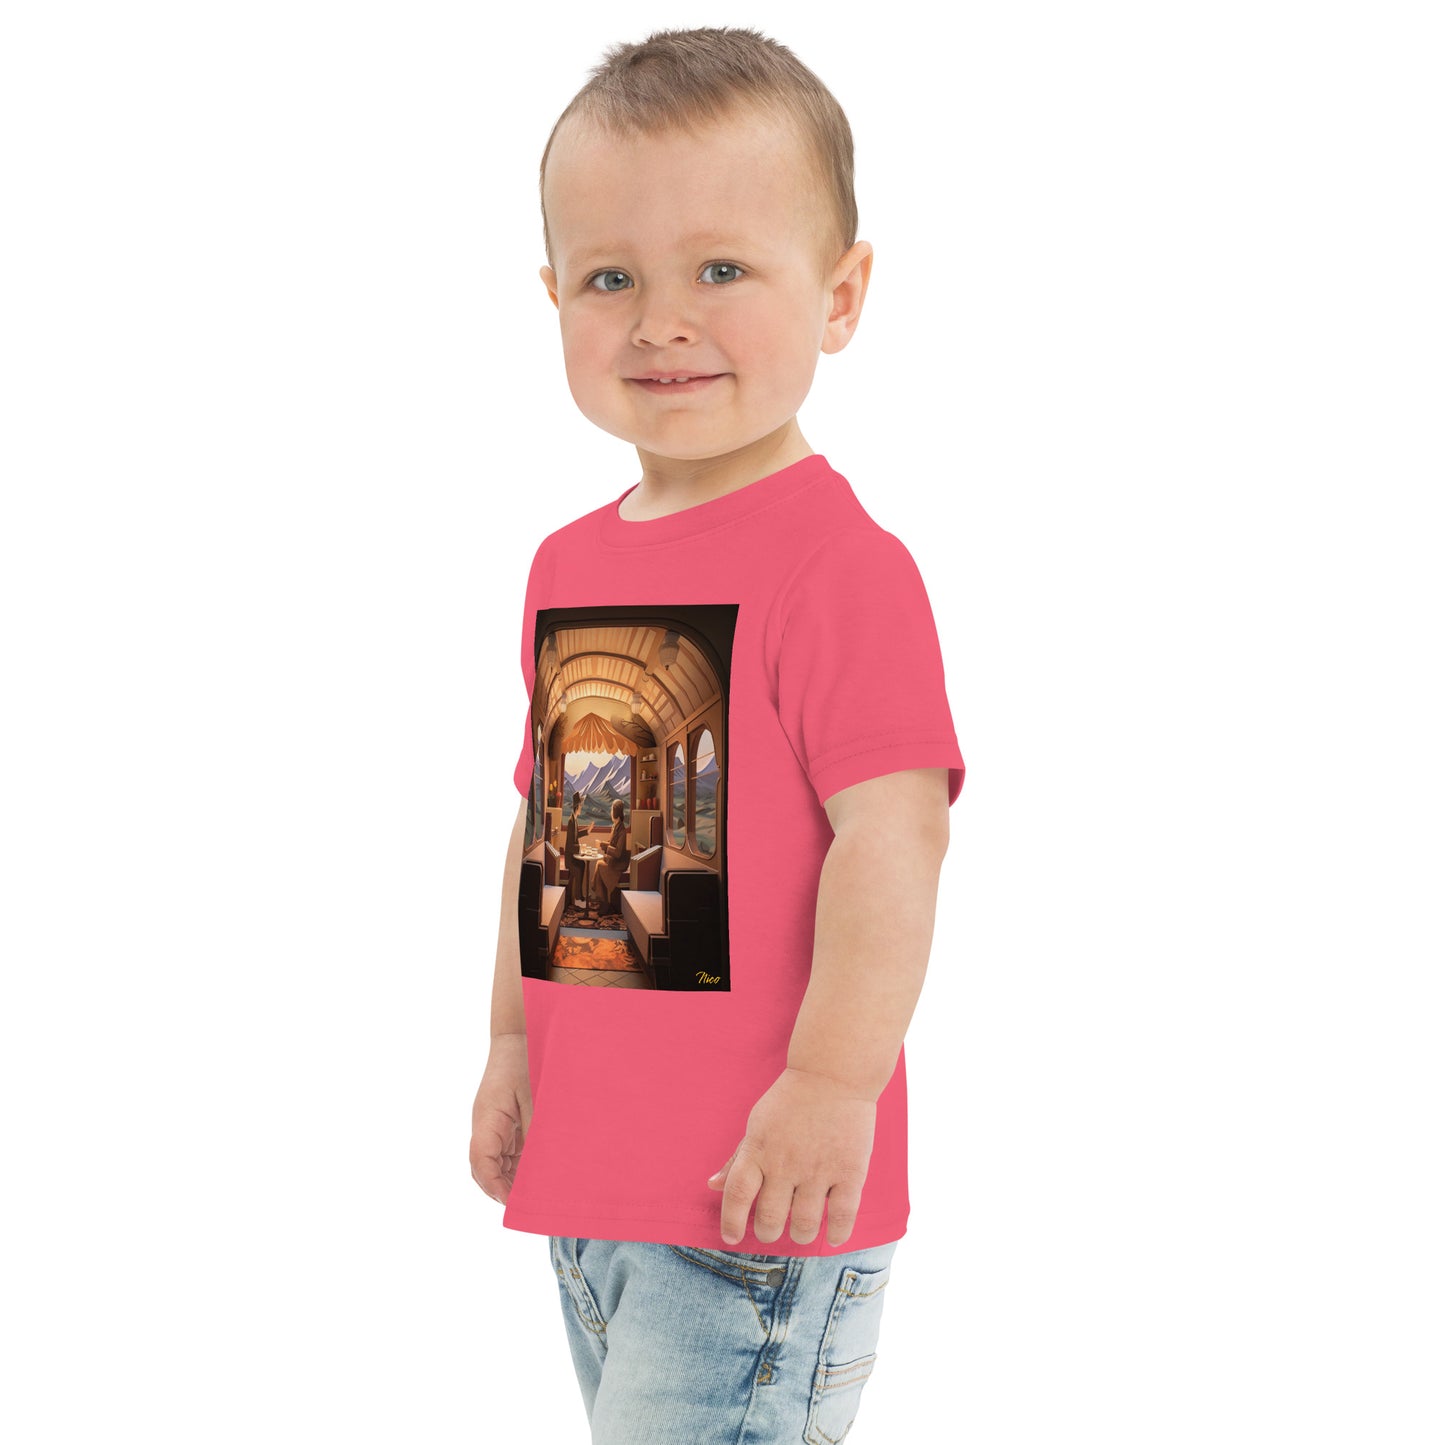 Orient Express Series Print #10 - Toddler jersey t-shirt